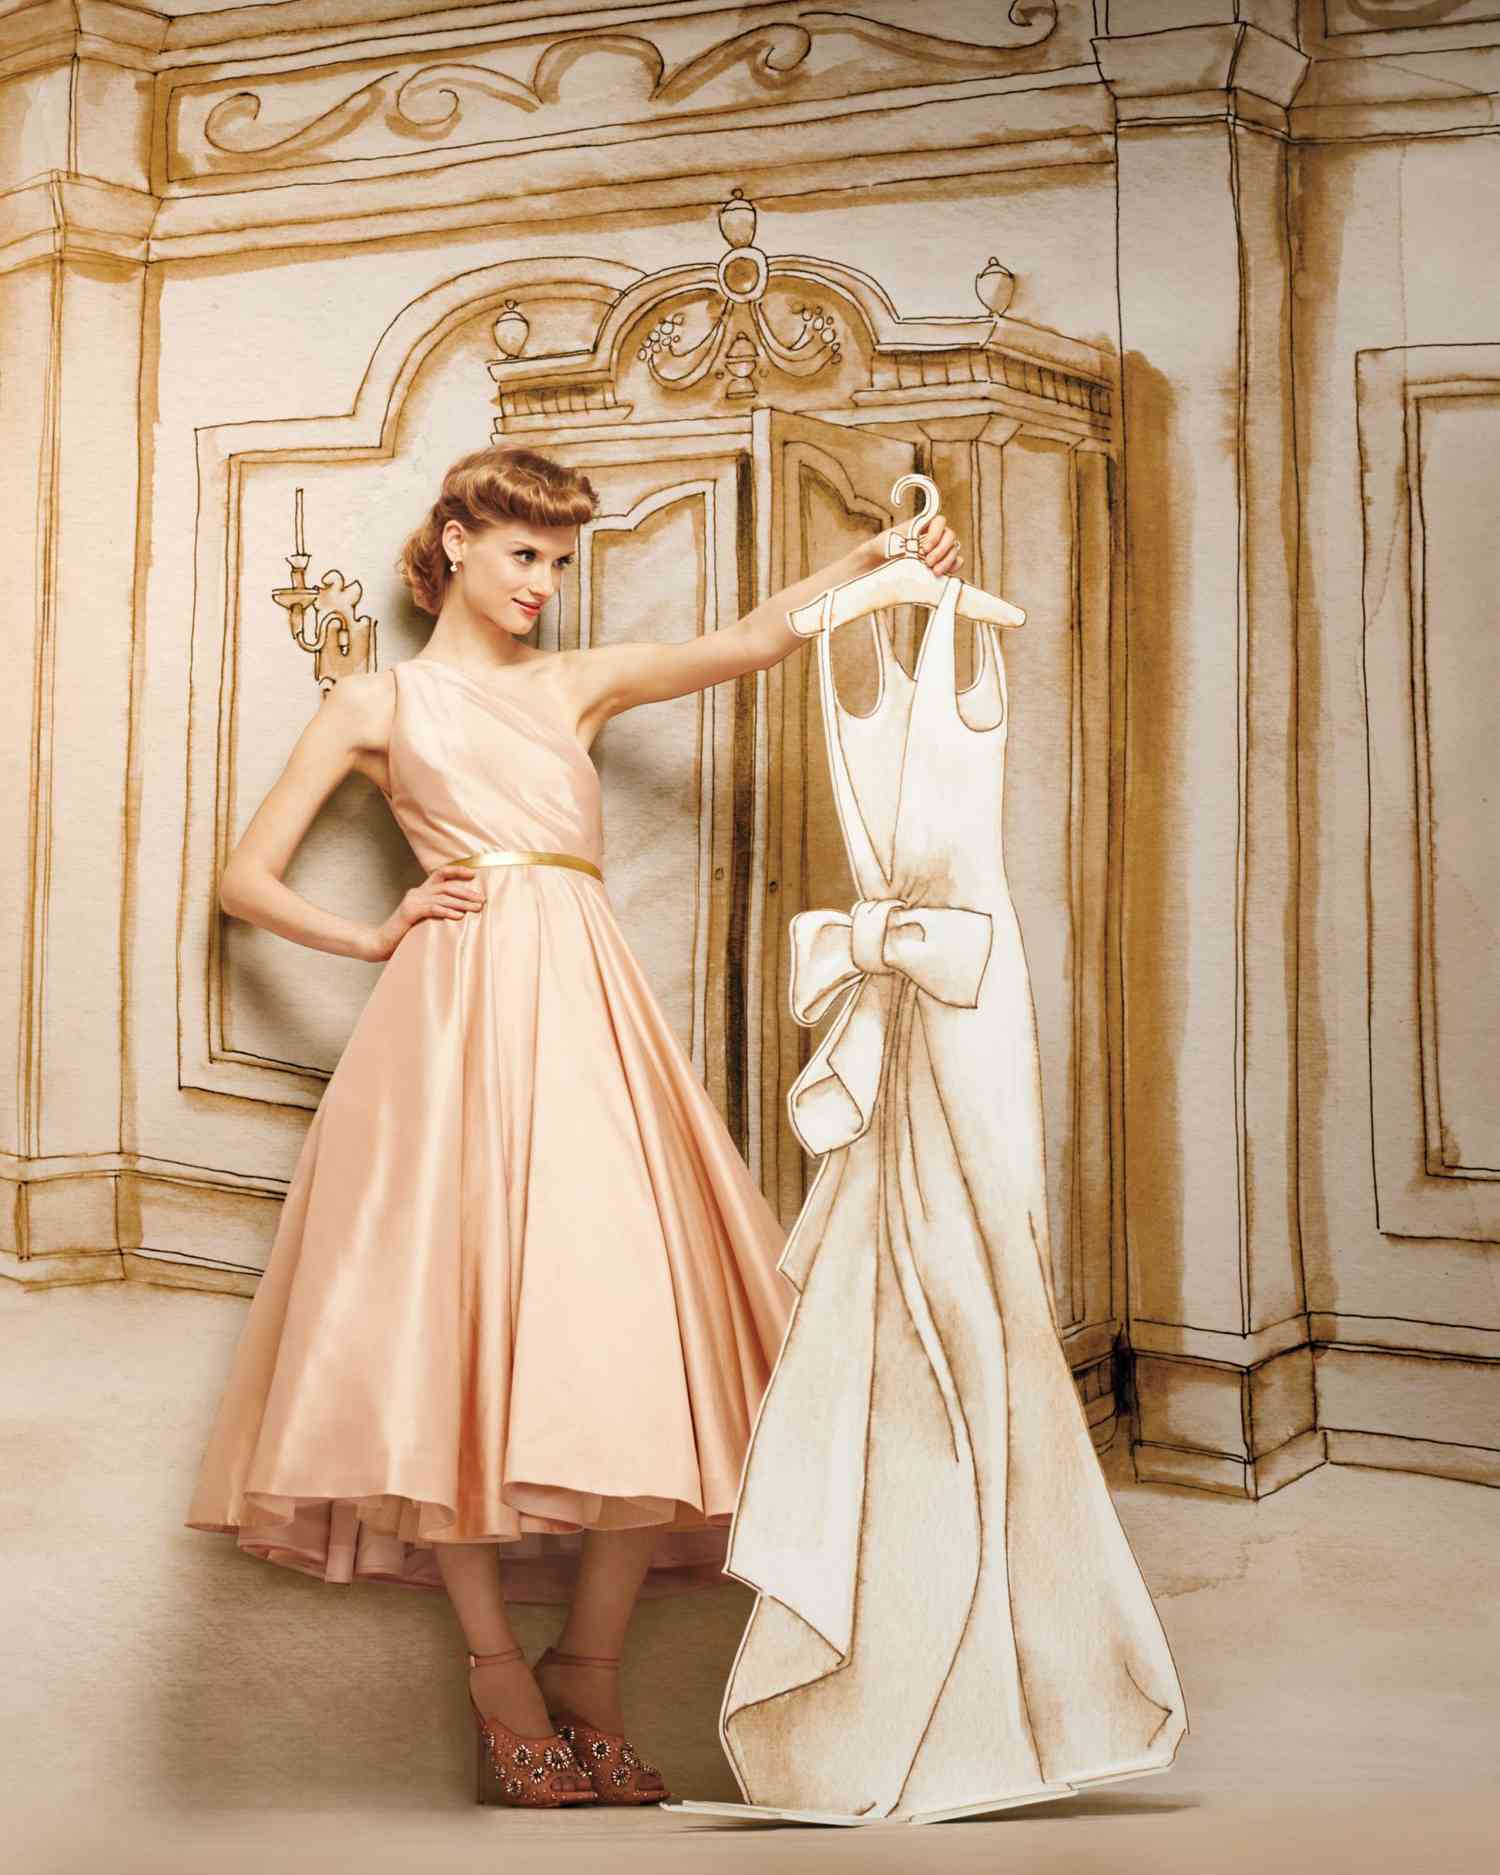 Dreamy Fairy Tale Wedding Dresses   Martha Stewart